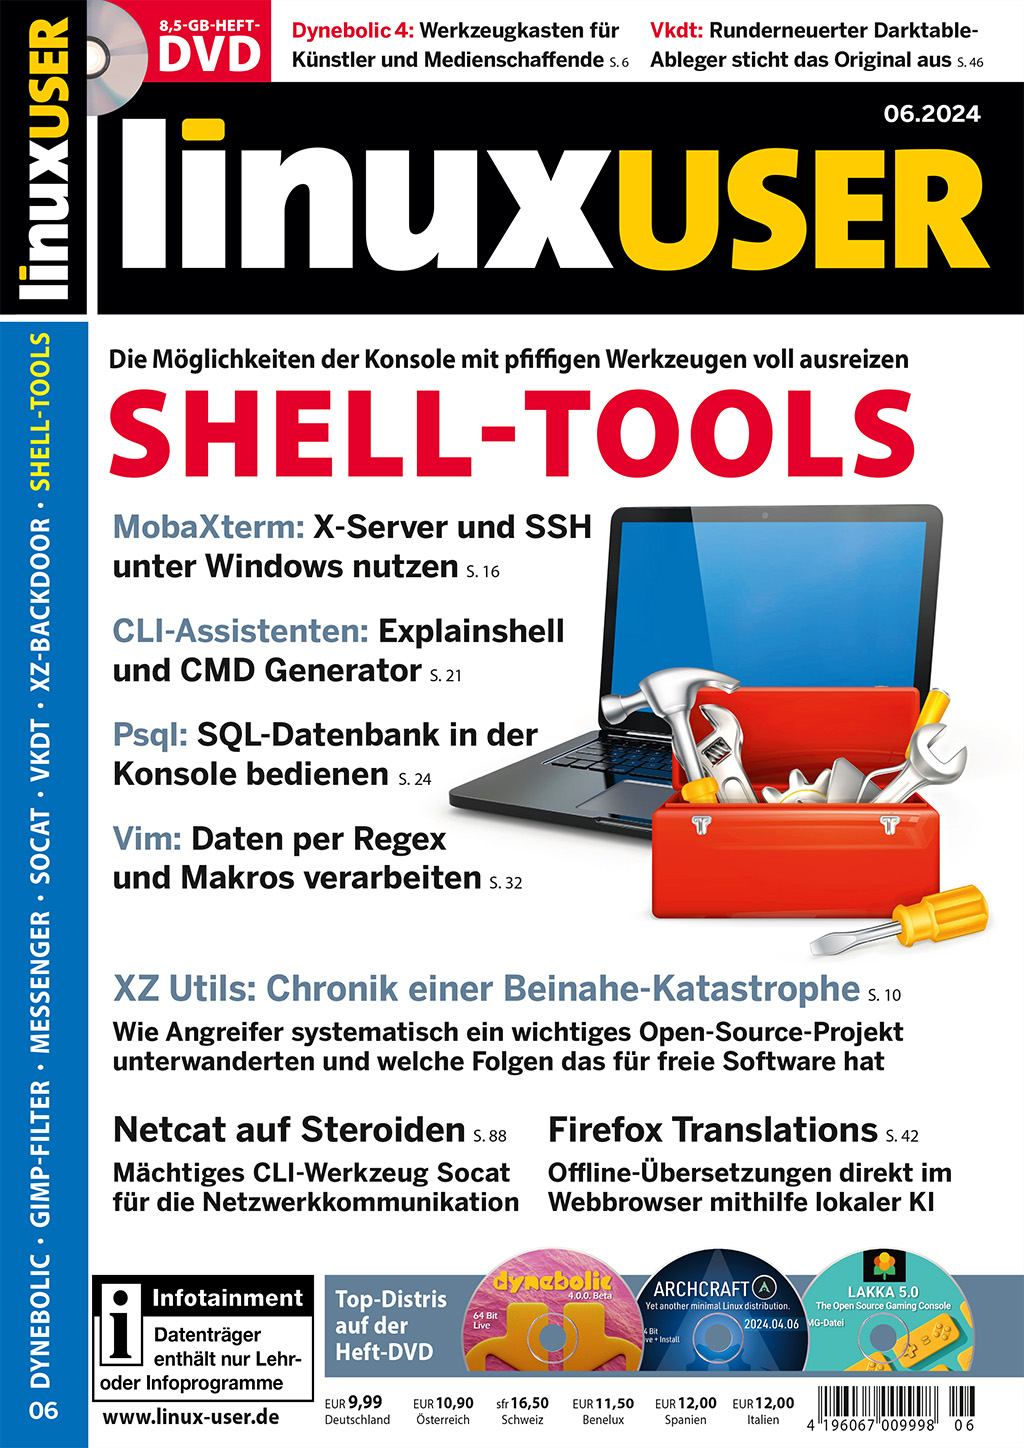 LinuxUser DVD 06/2024